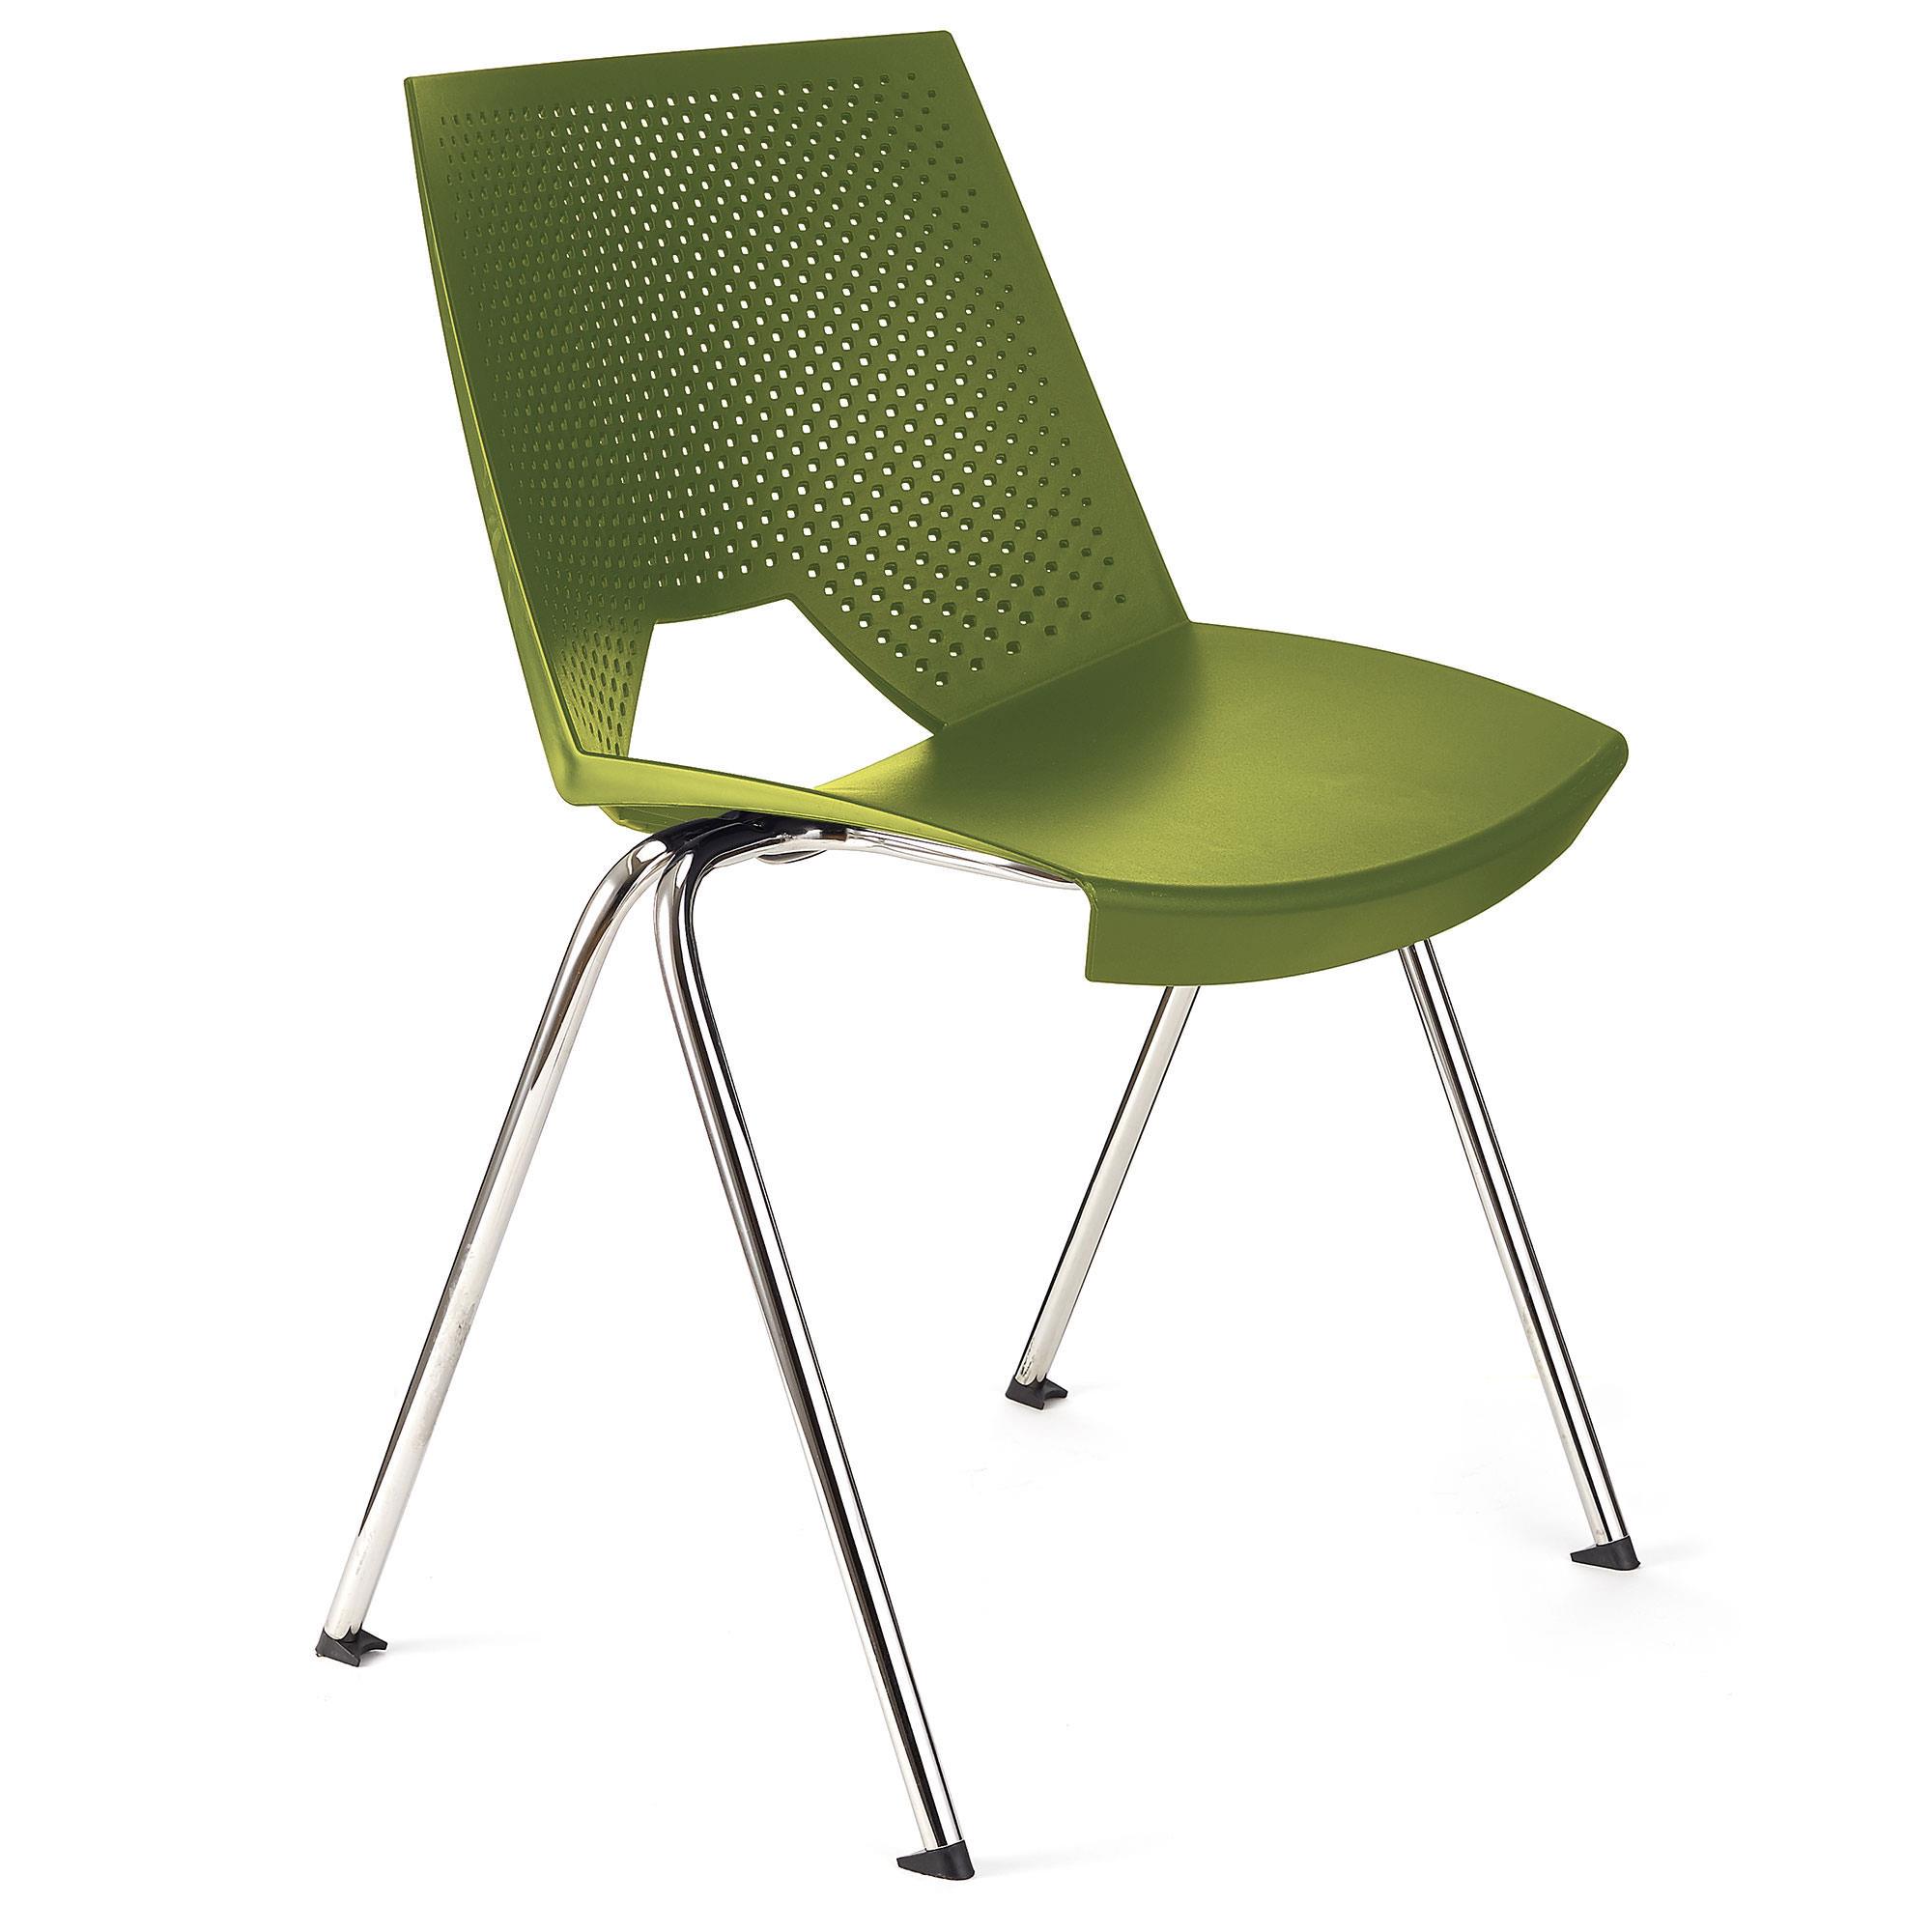 Konferenzstuhl ENZO, bequem, praktisch und stapelbar, Farbe Grün